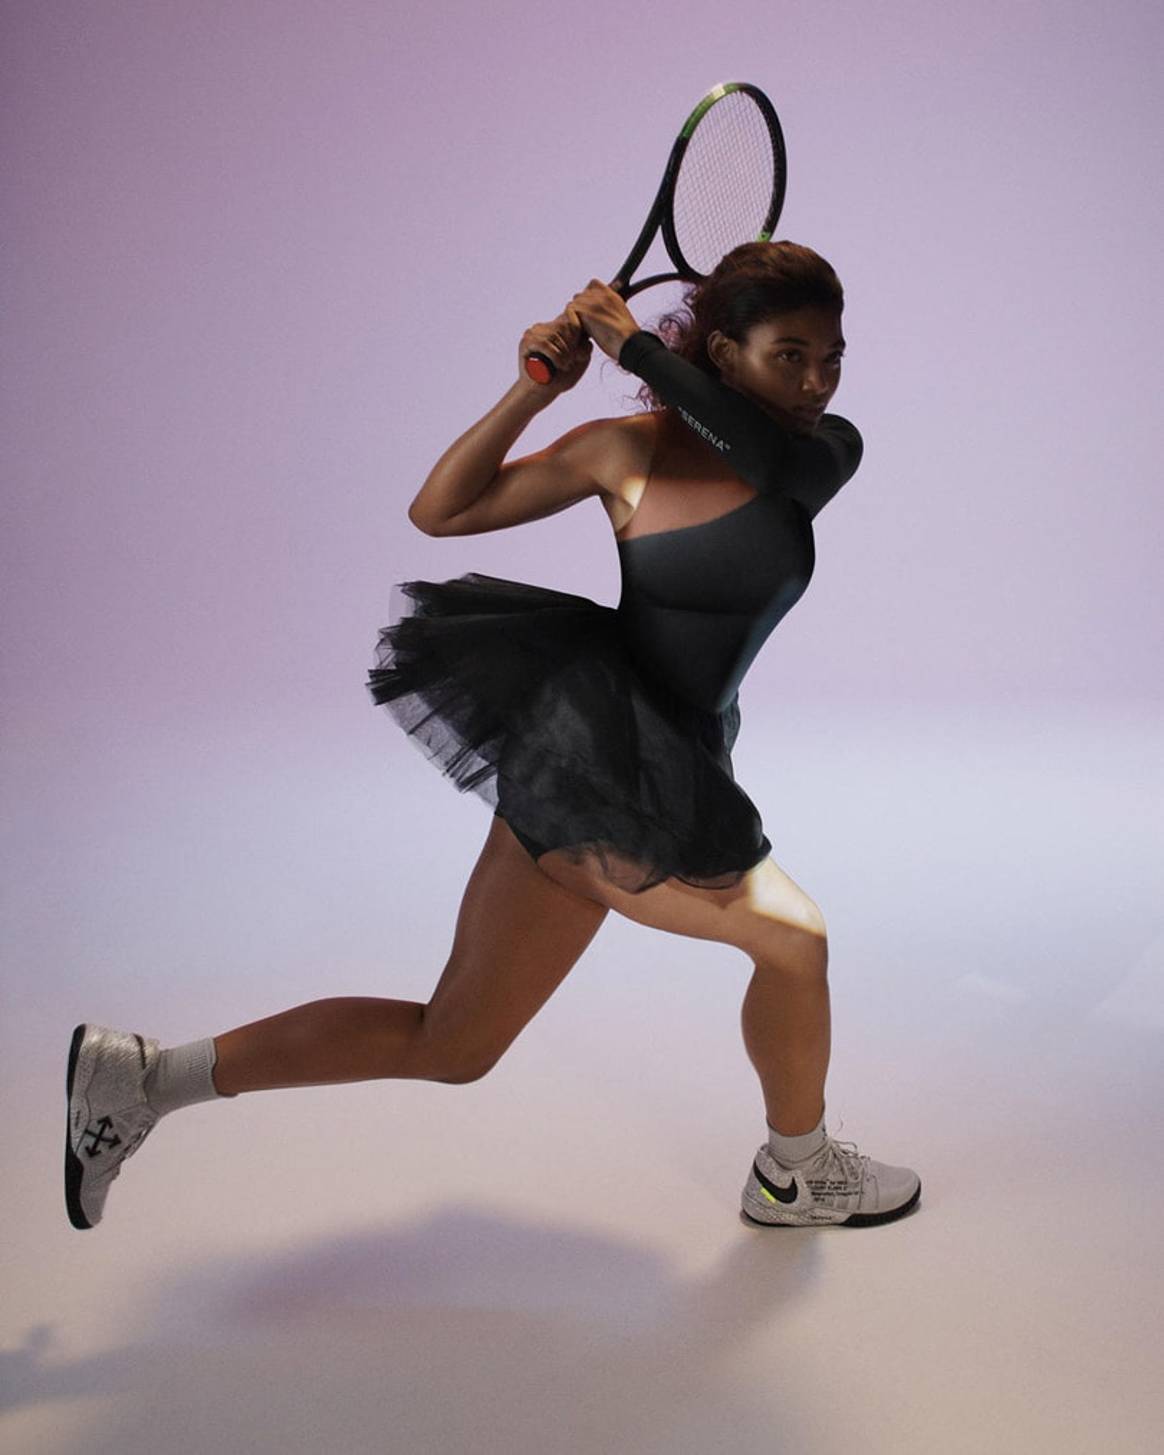 Virgil Abloh entwirft Nike-Kollektion für Serena Williams